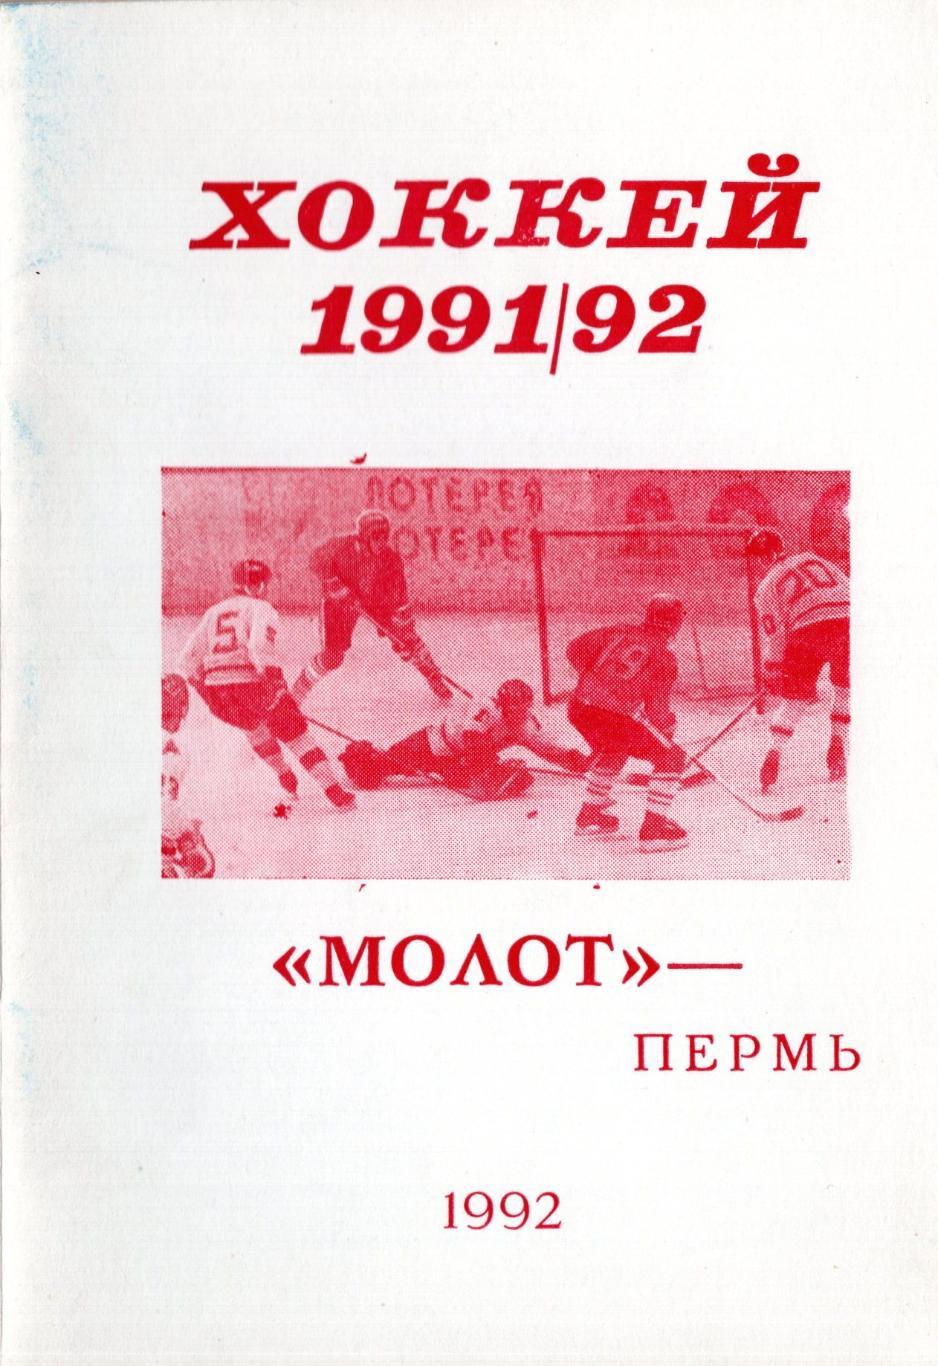 !!!РАСПРОДАЖА!!! 1991/1992. Хоккей. Пермь